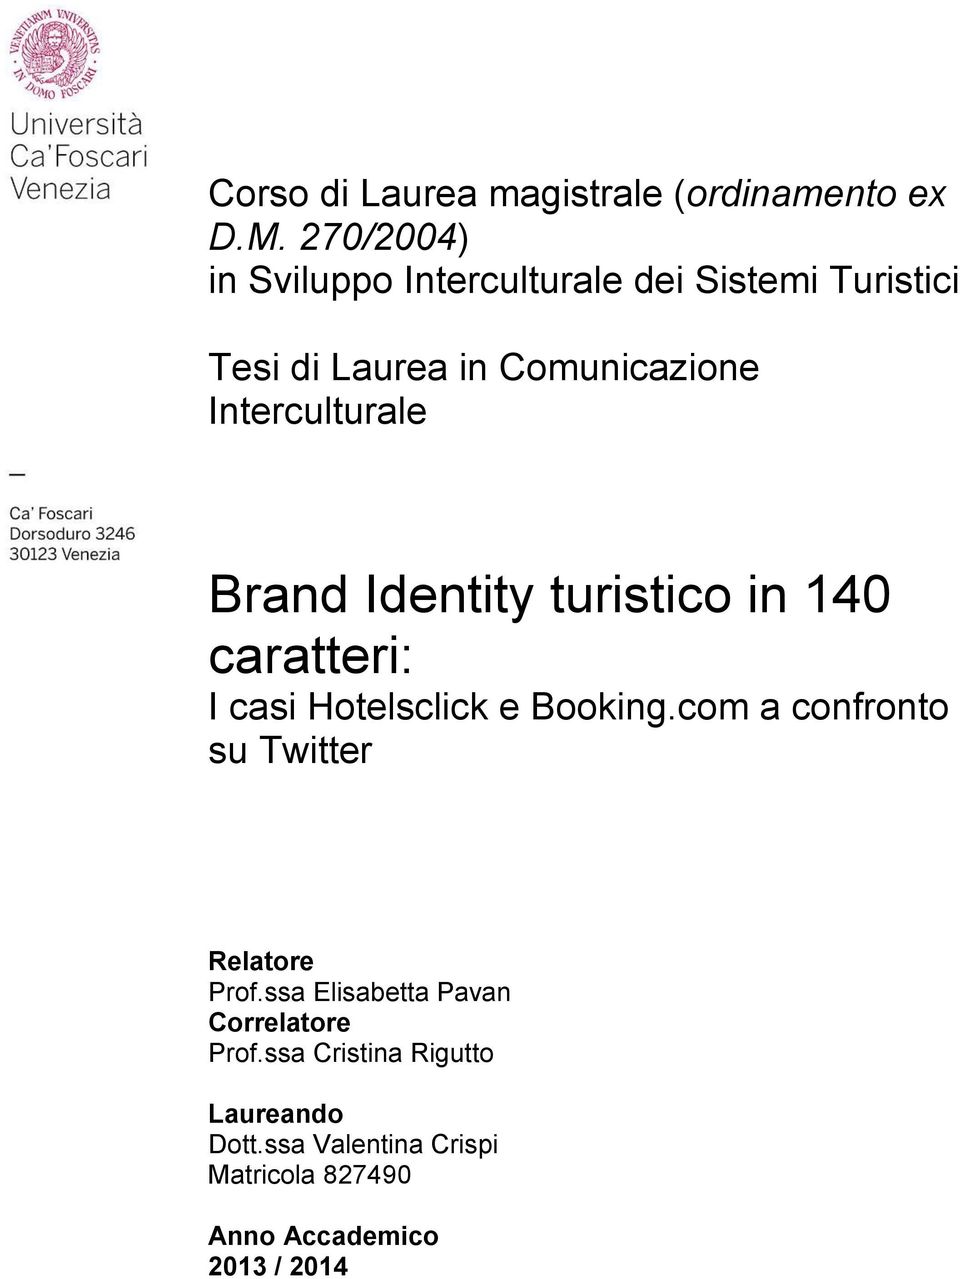 Interculturale Brand Identity turistico in 140 caratteri: I casi Hotelsclick e Booking.